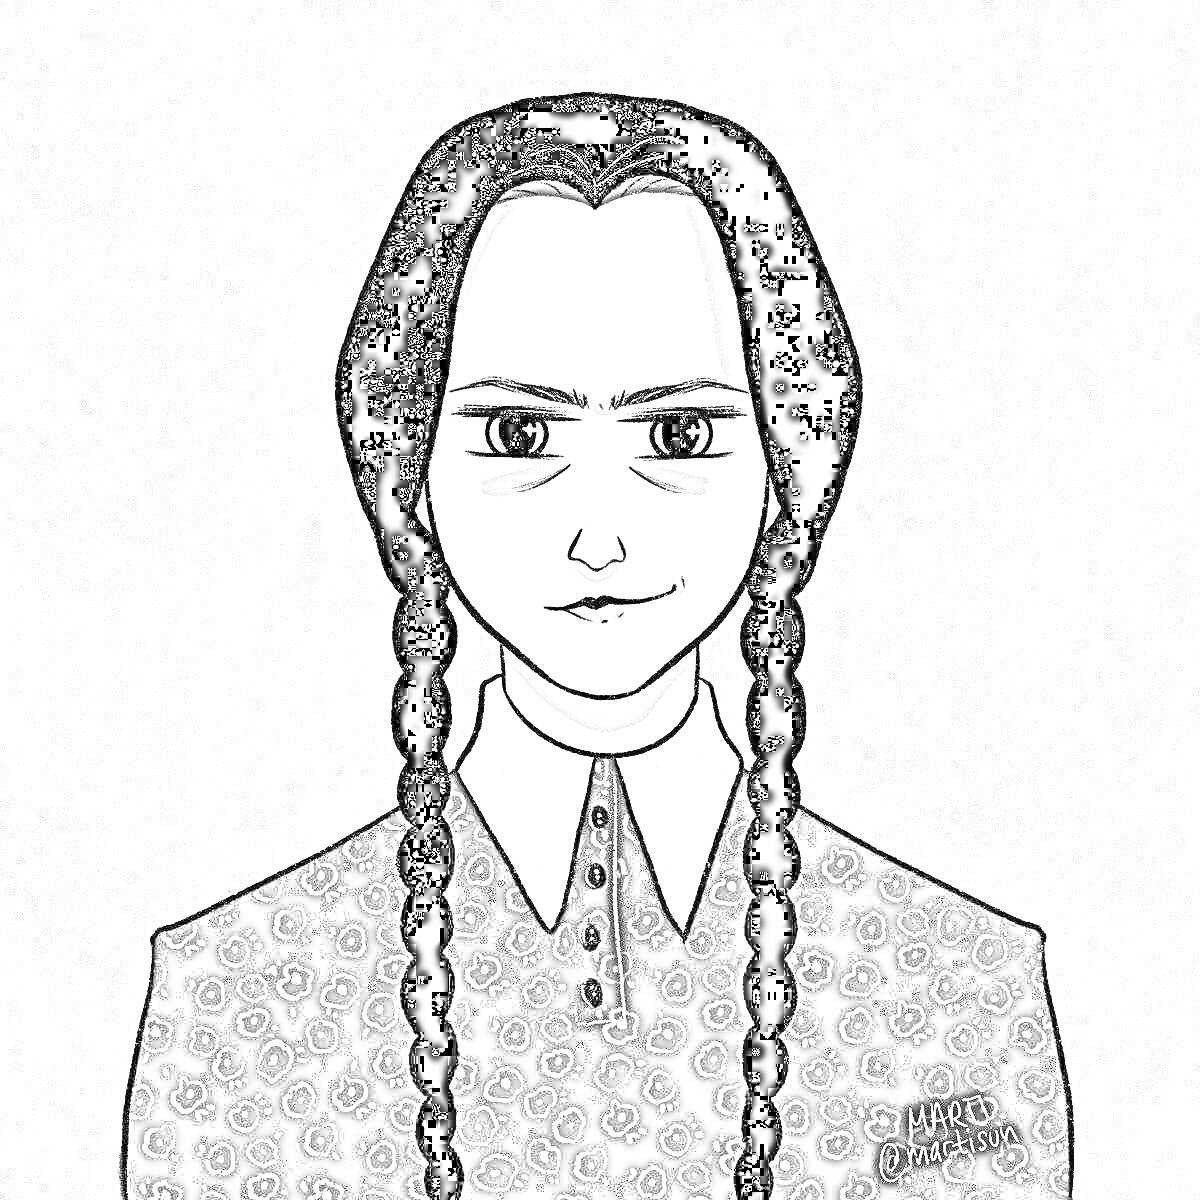 Раскраска Портрет девушки с длинными косами и строгим выражением лица в сезонном платье с геометрическим узором и белым воротником на сером фоне